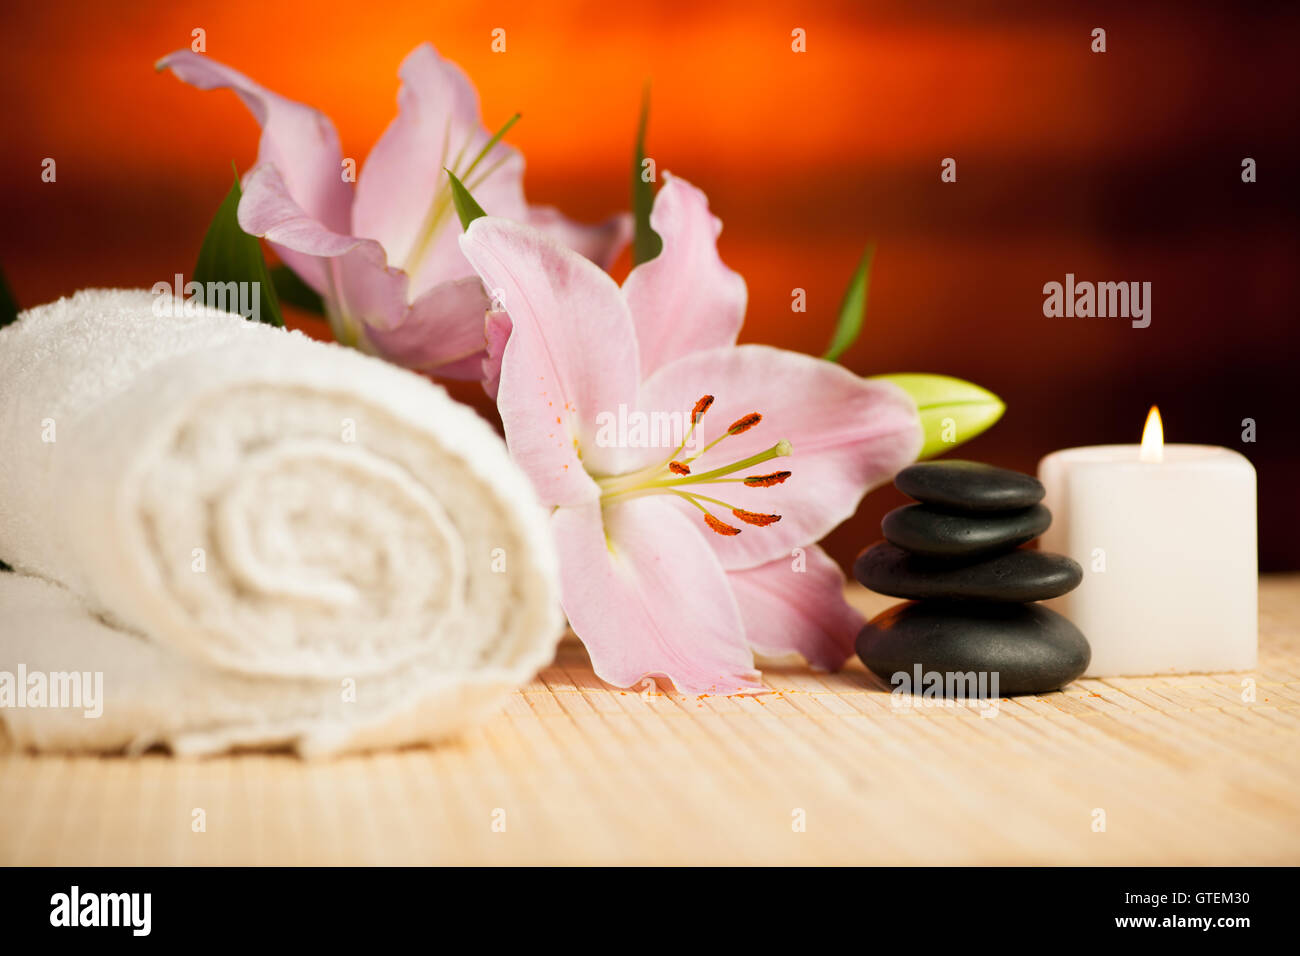 Spa-Konzept der Lilie Blume, Handtücher, Meersalz, Kerze und Crystal Rock rosa Quarz auf warmen hölzernen Hintergrund. Stockfoto